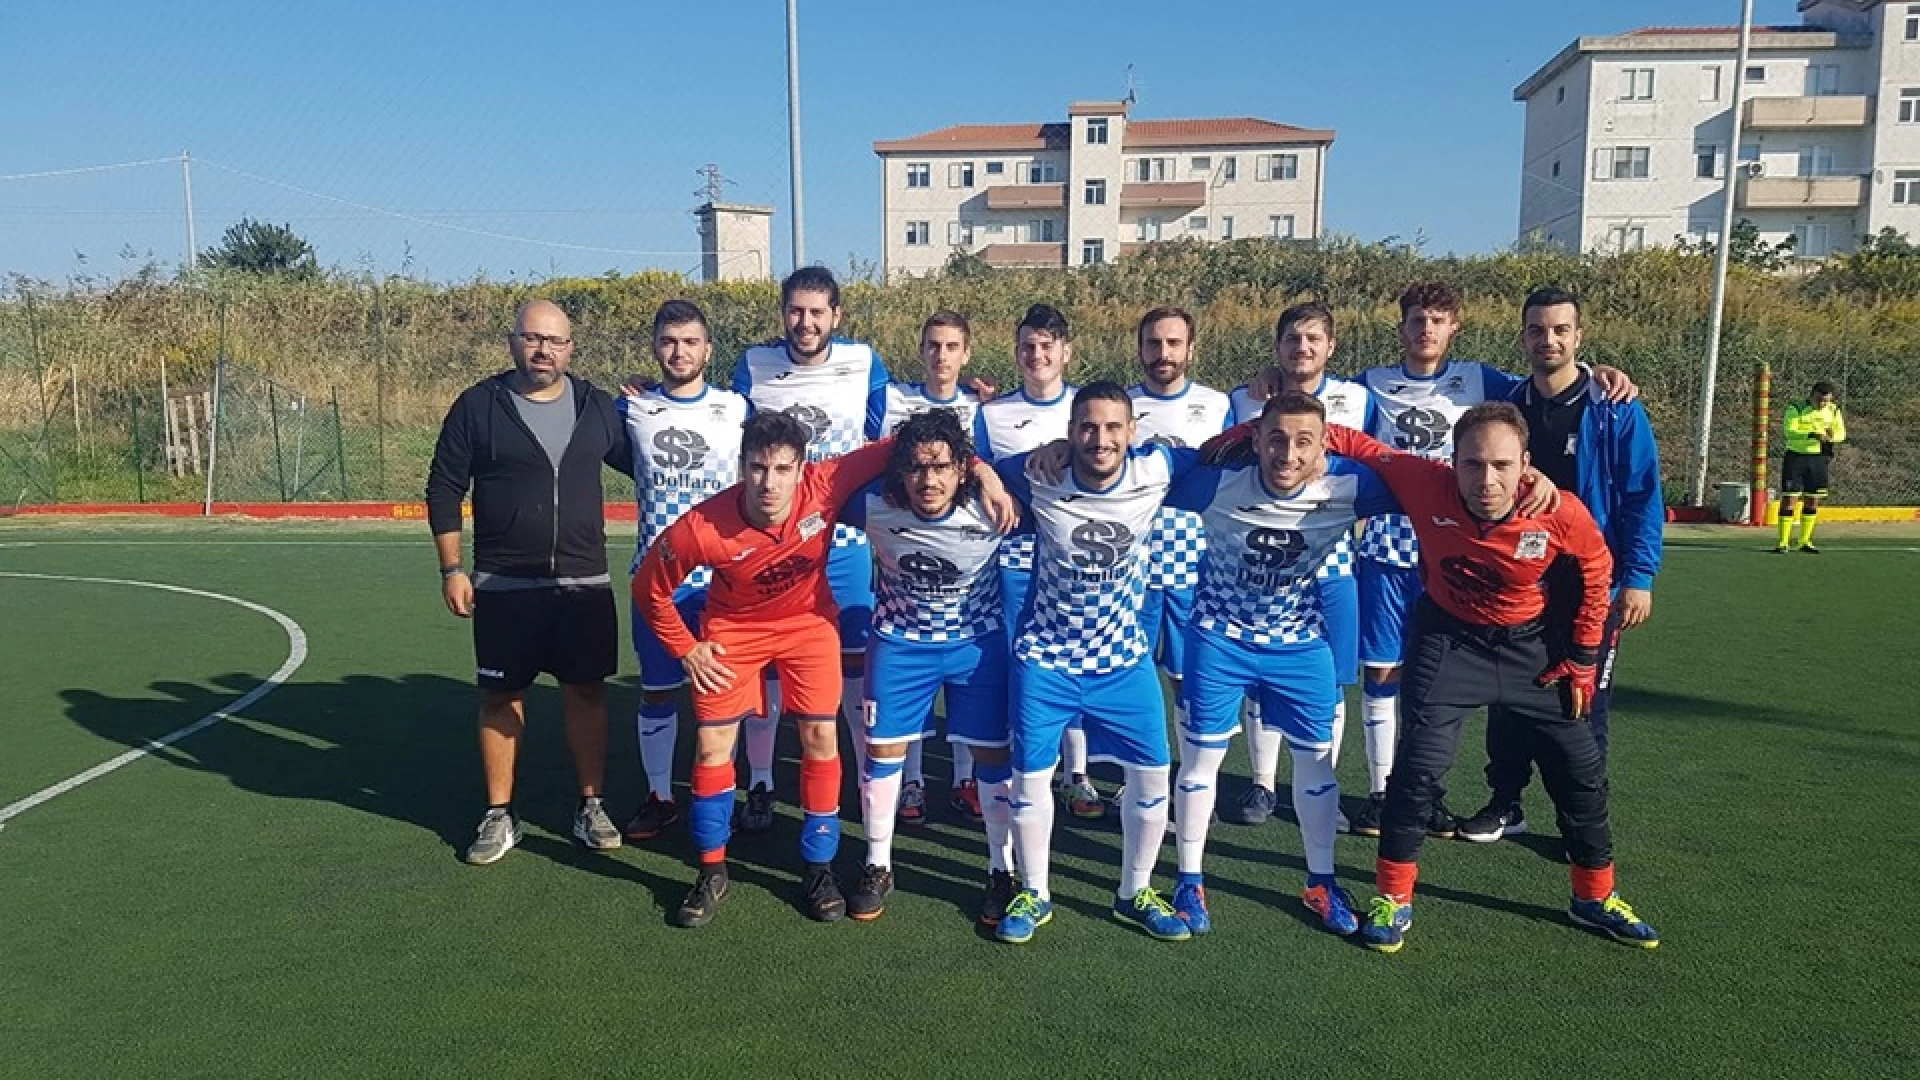 Calcio a 5: la Futsal Colli stende anche il Bojano e vola al primo posto in classifica. La formazione di Faralli è spumeggiante in campo.